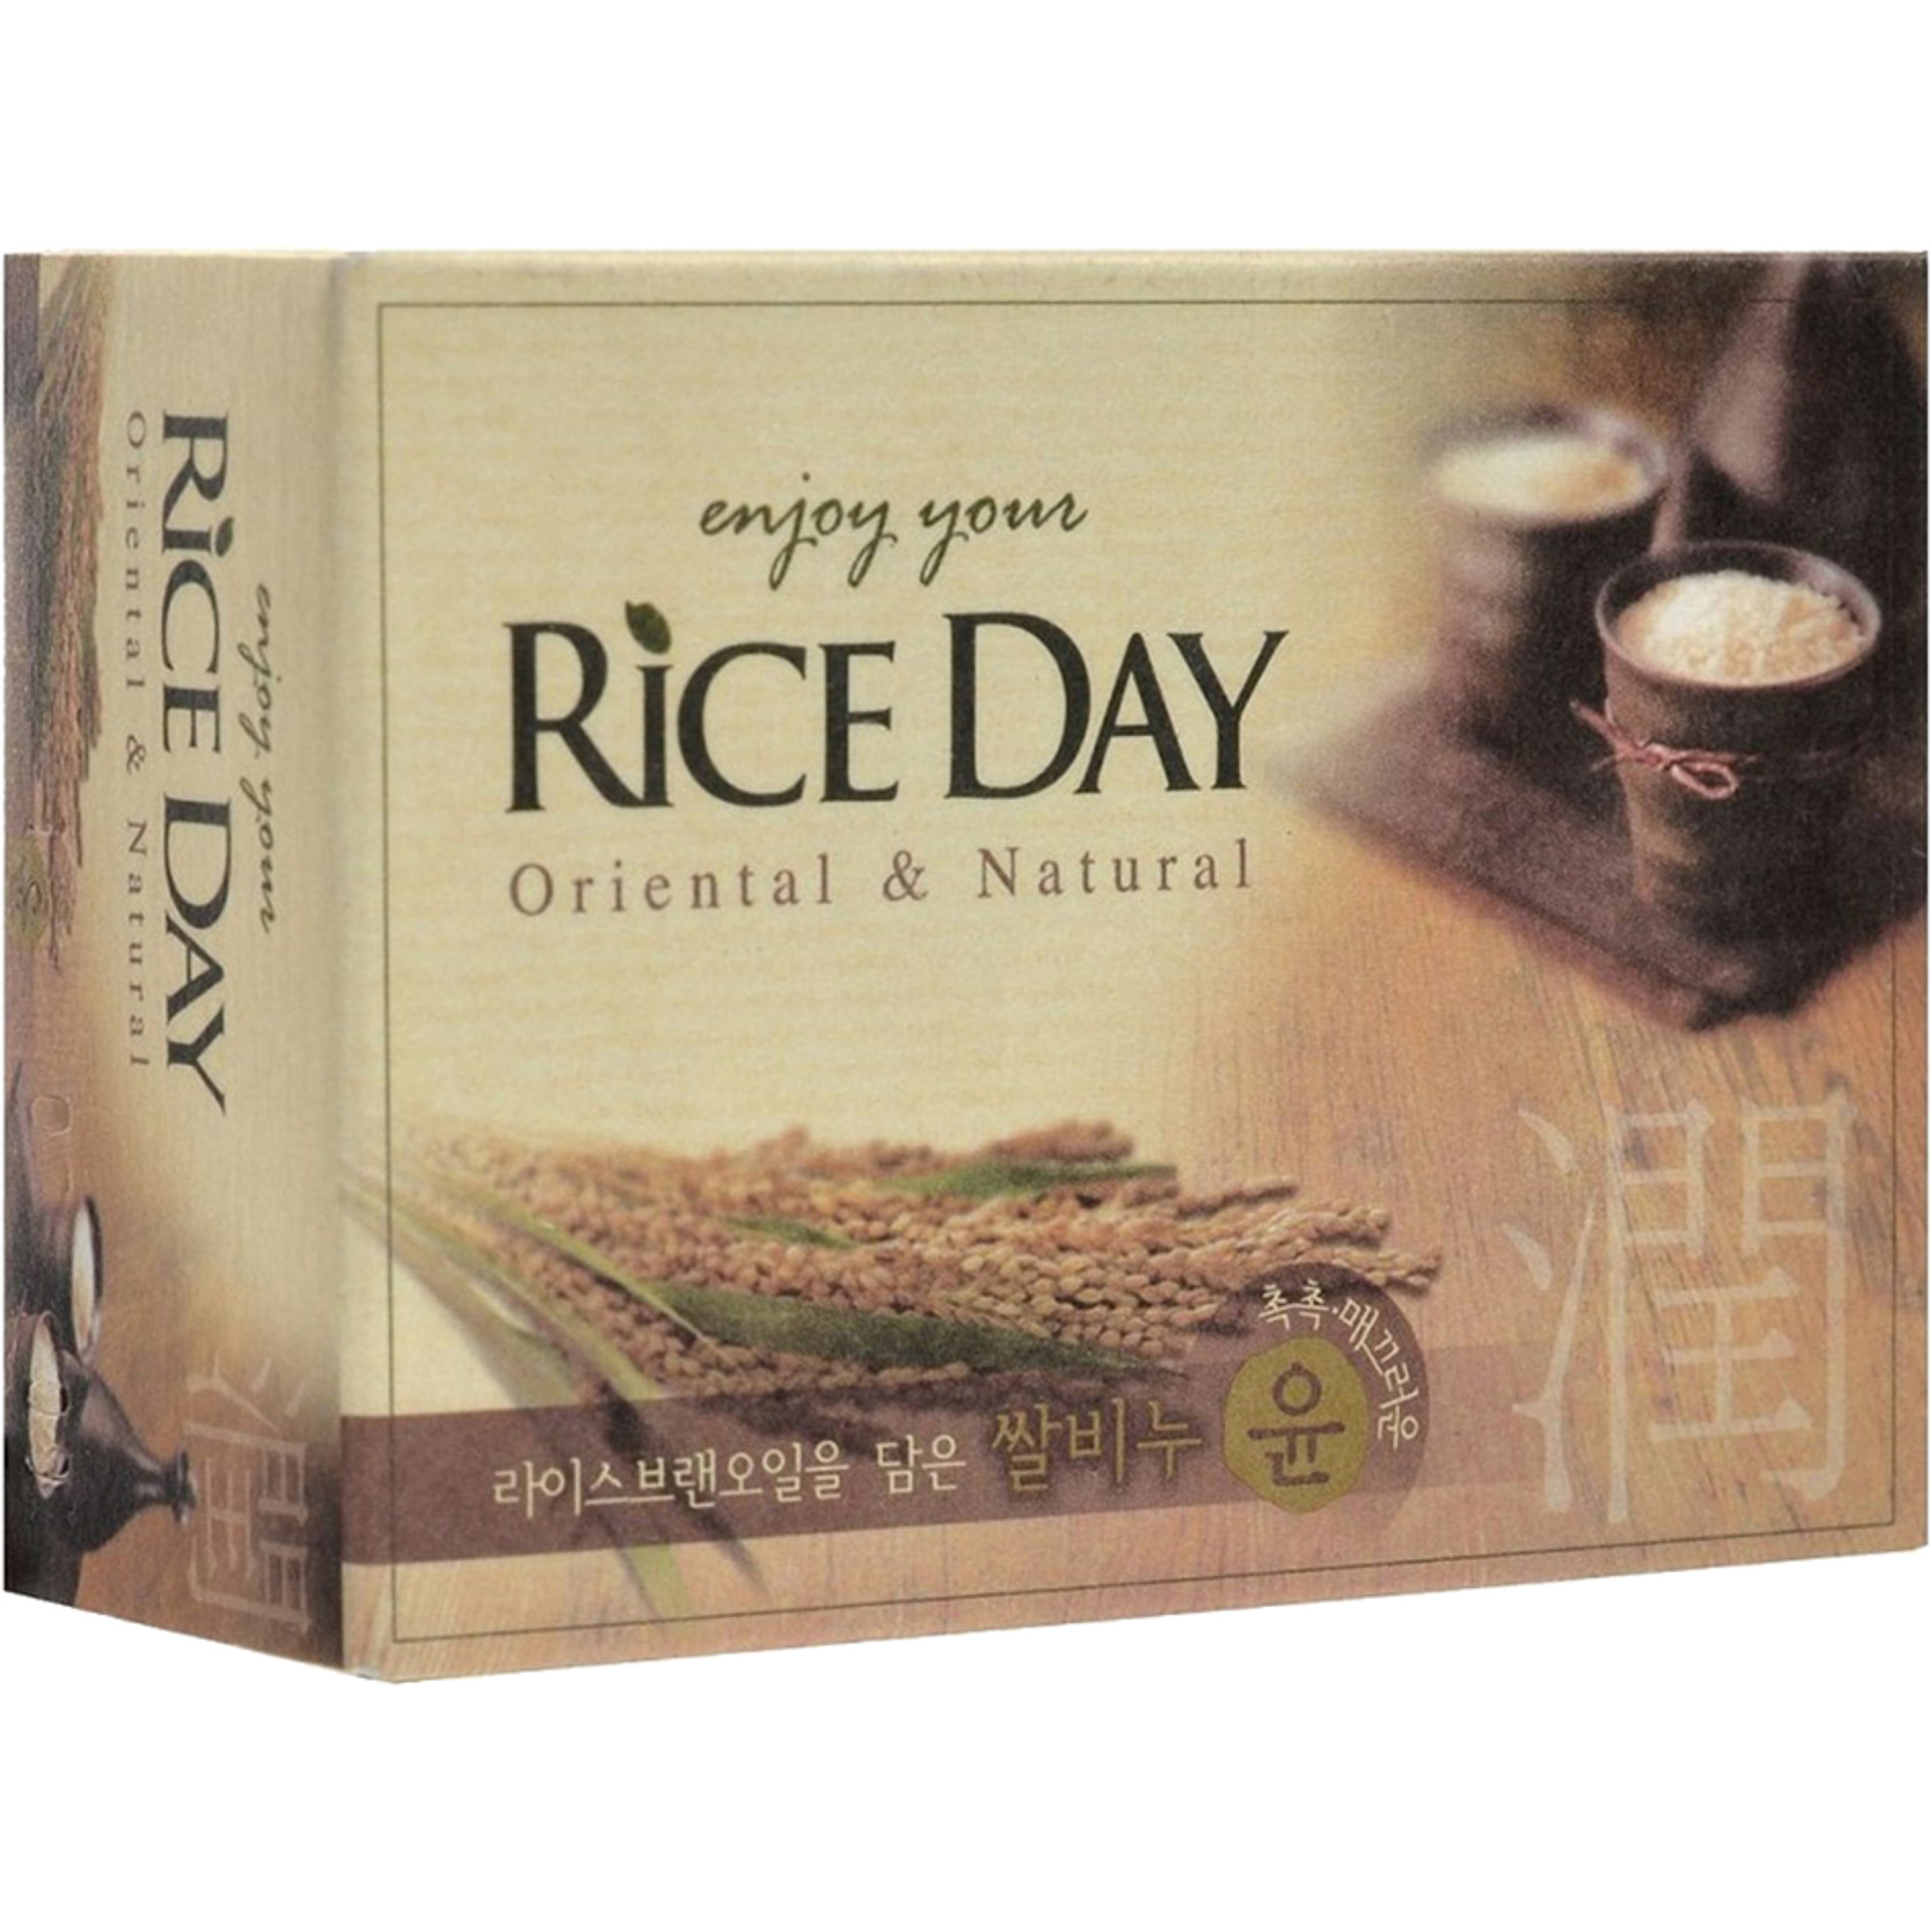 Мыло CJ Lion Rice Day с экстрактом рисовых отрубей 100 г мыльная основа